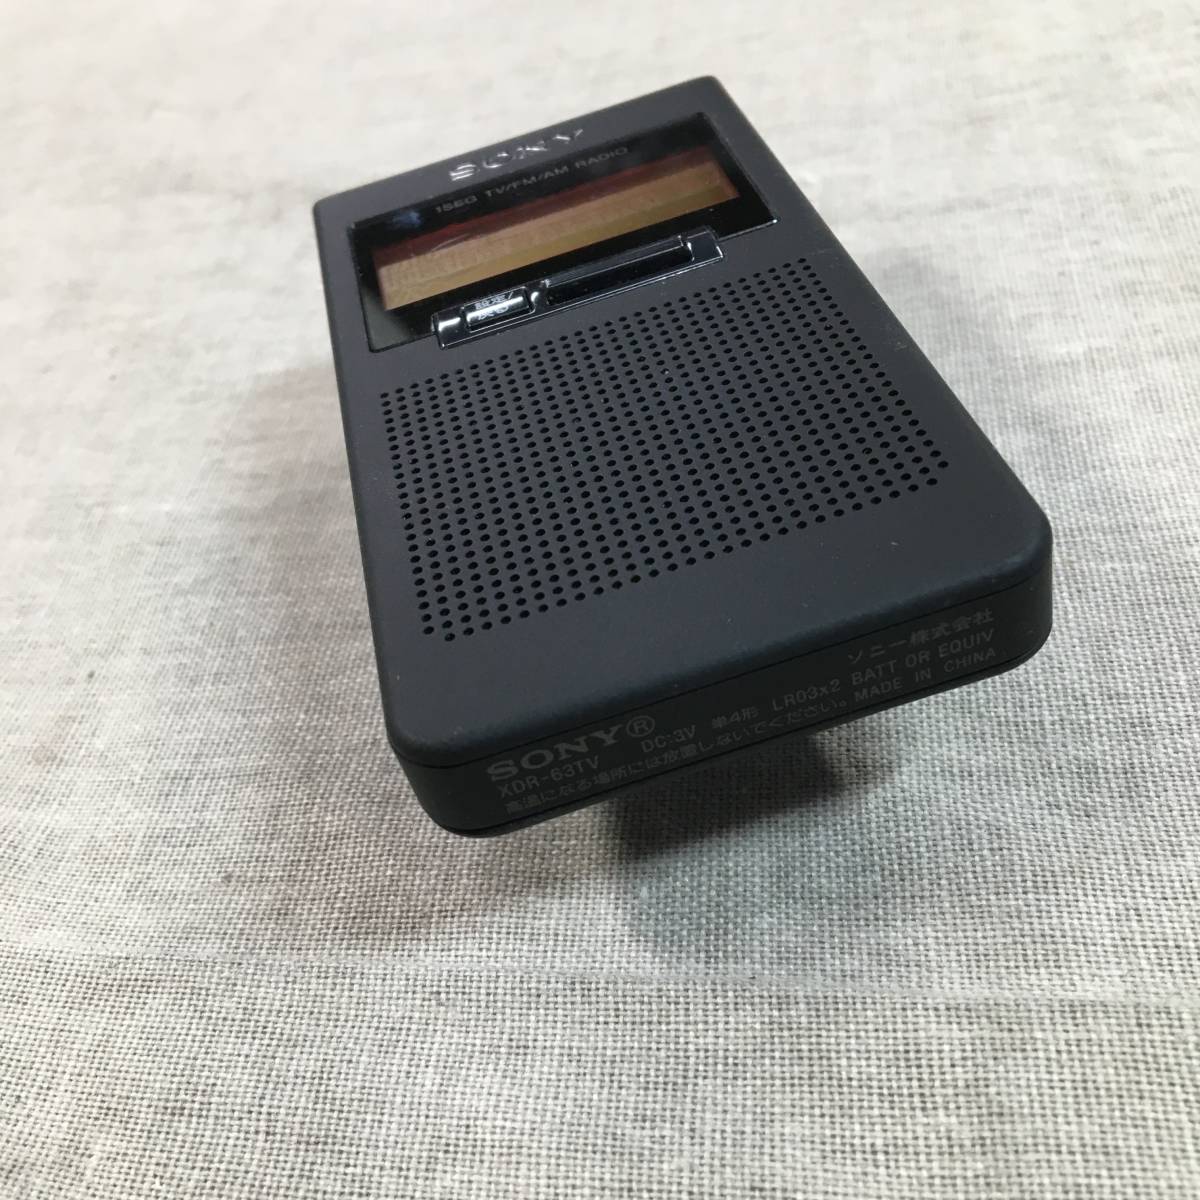 初回限定 ソニー ポケットラジオ XDR-64TV : ポケッタブルサイズ